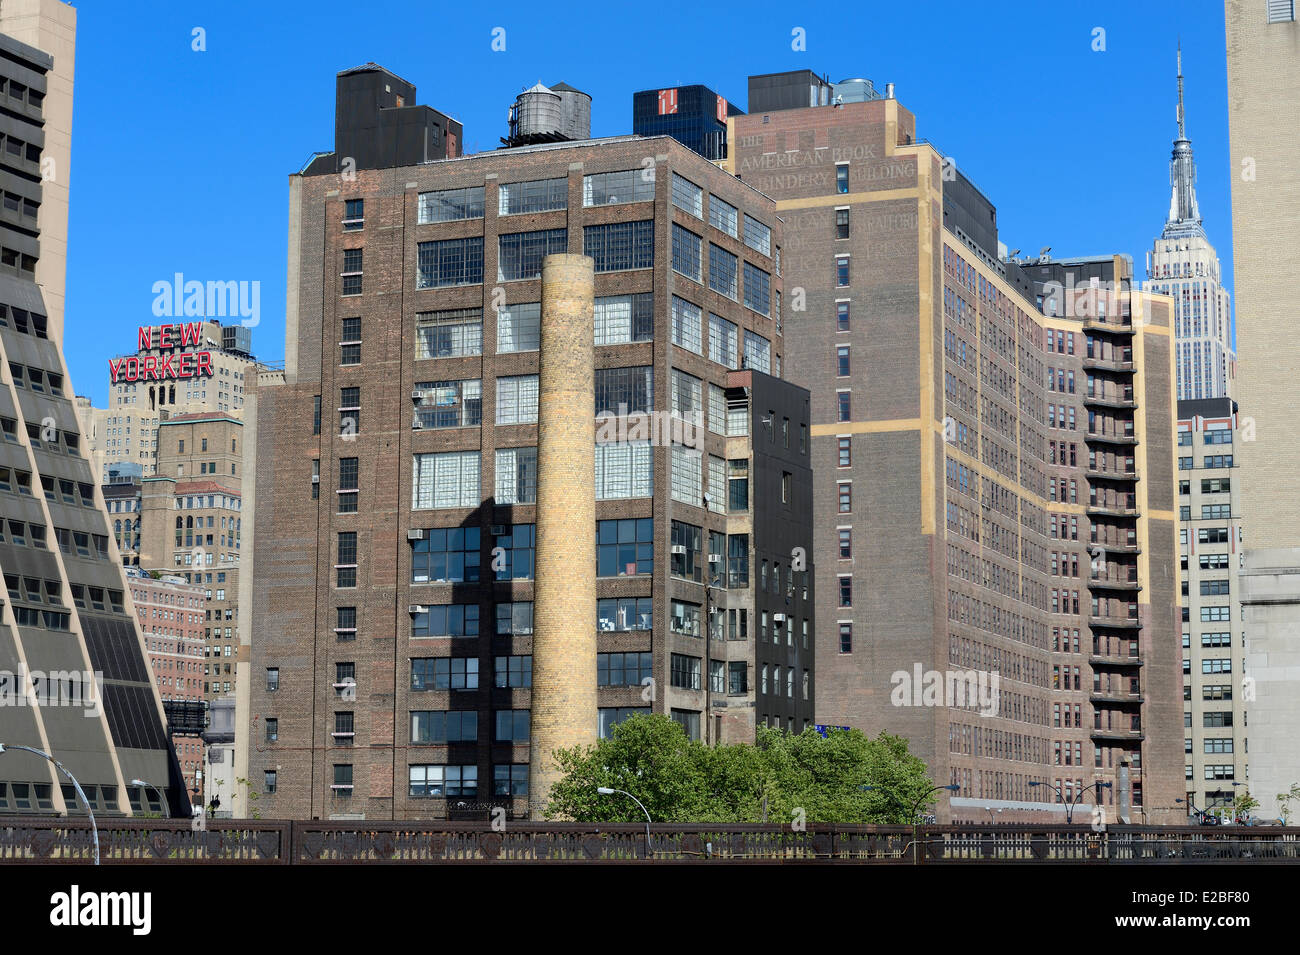 Stati Uniti, New York City, Manhattan, New Yorker Hotel all'angolo della 8th Ave e 34th Street, Empire State Building a destra Foto Stock